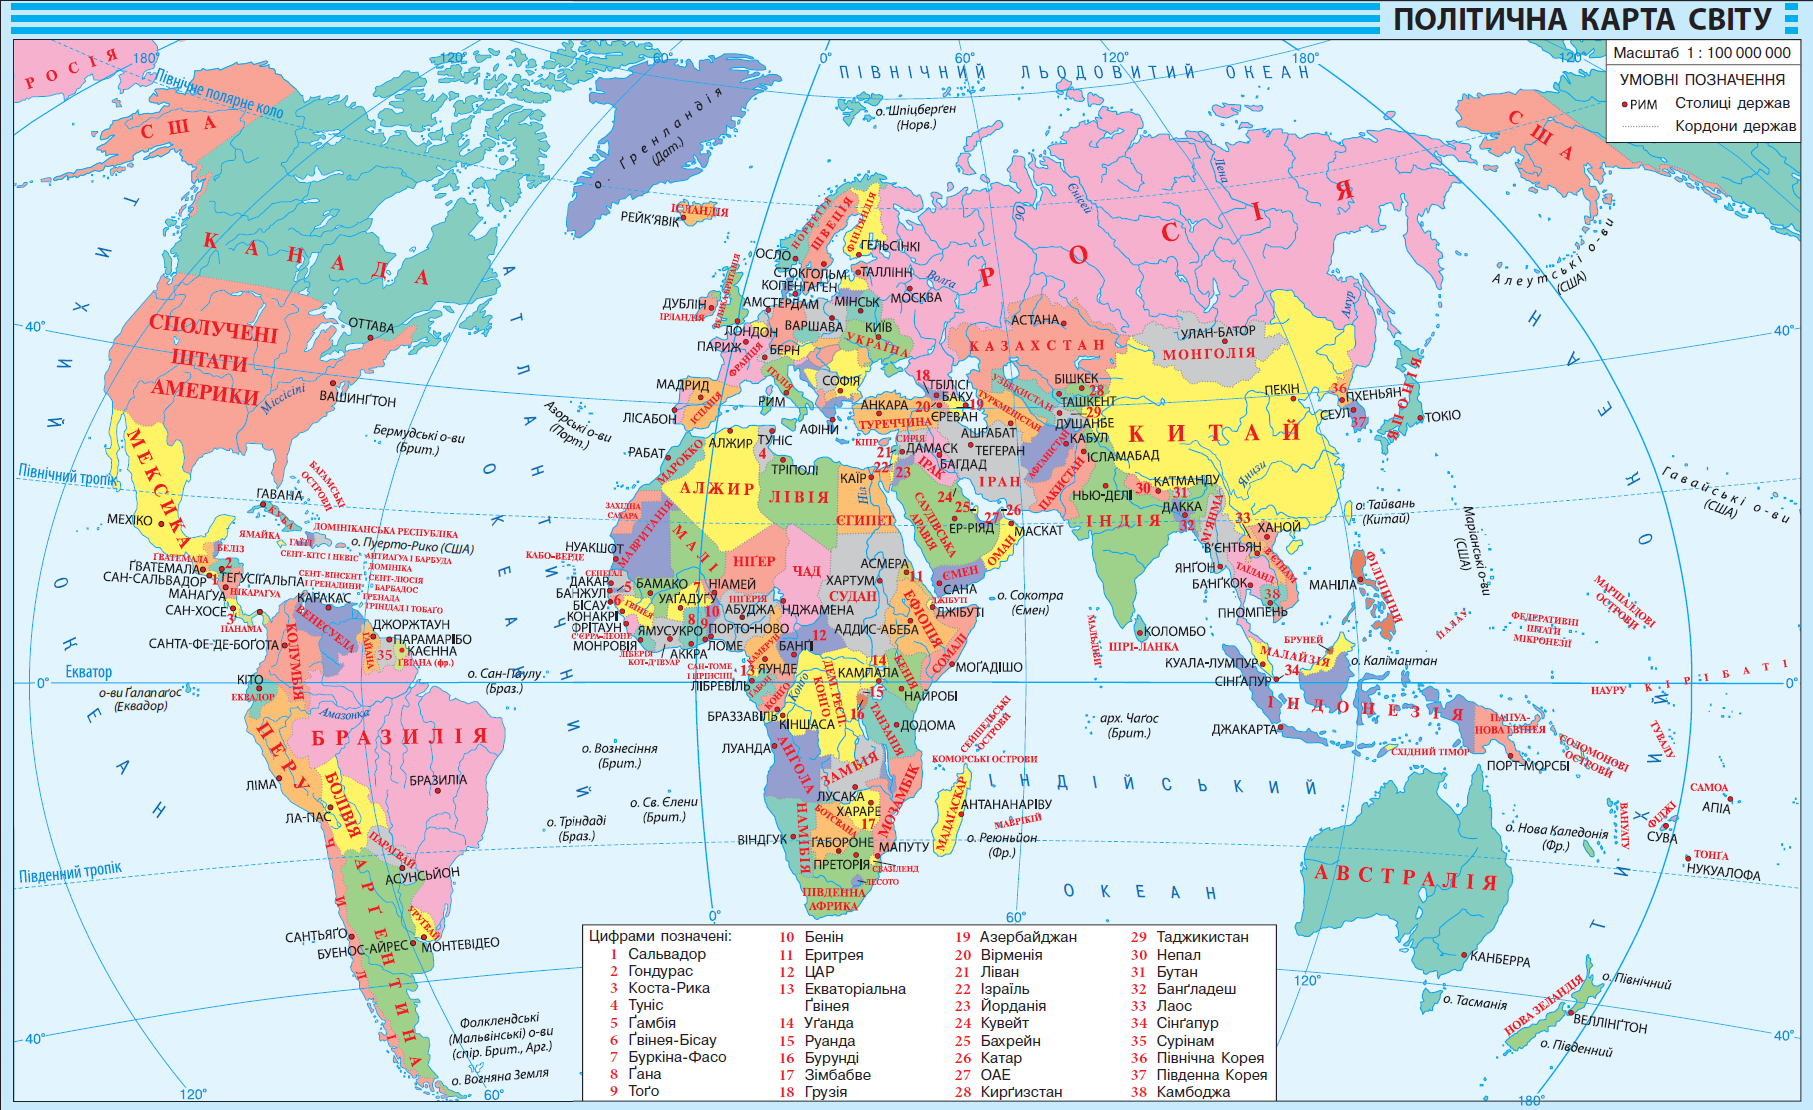 Karta. Карта світу. Політична карта. Політична карта світу на українській мові. Карта с обозначением стран.